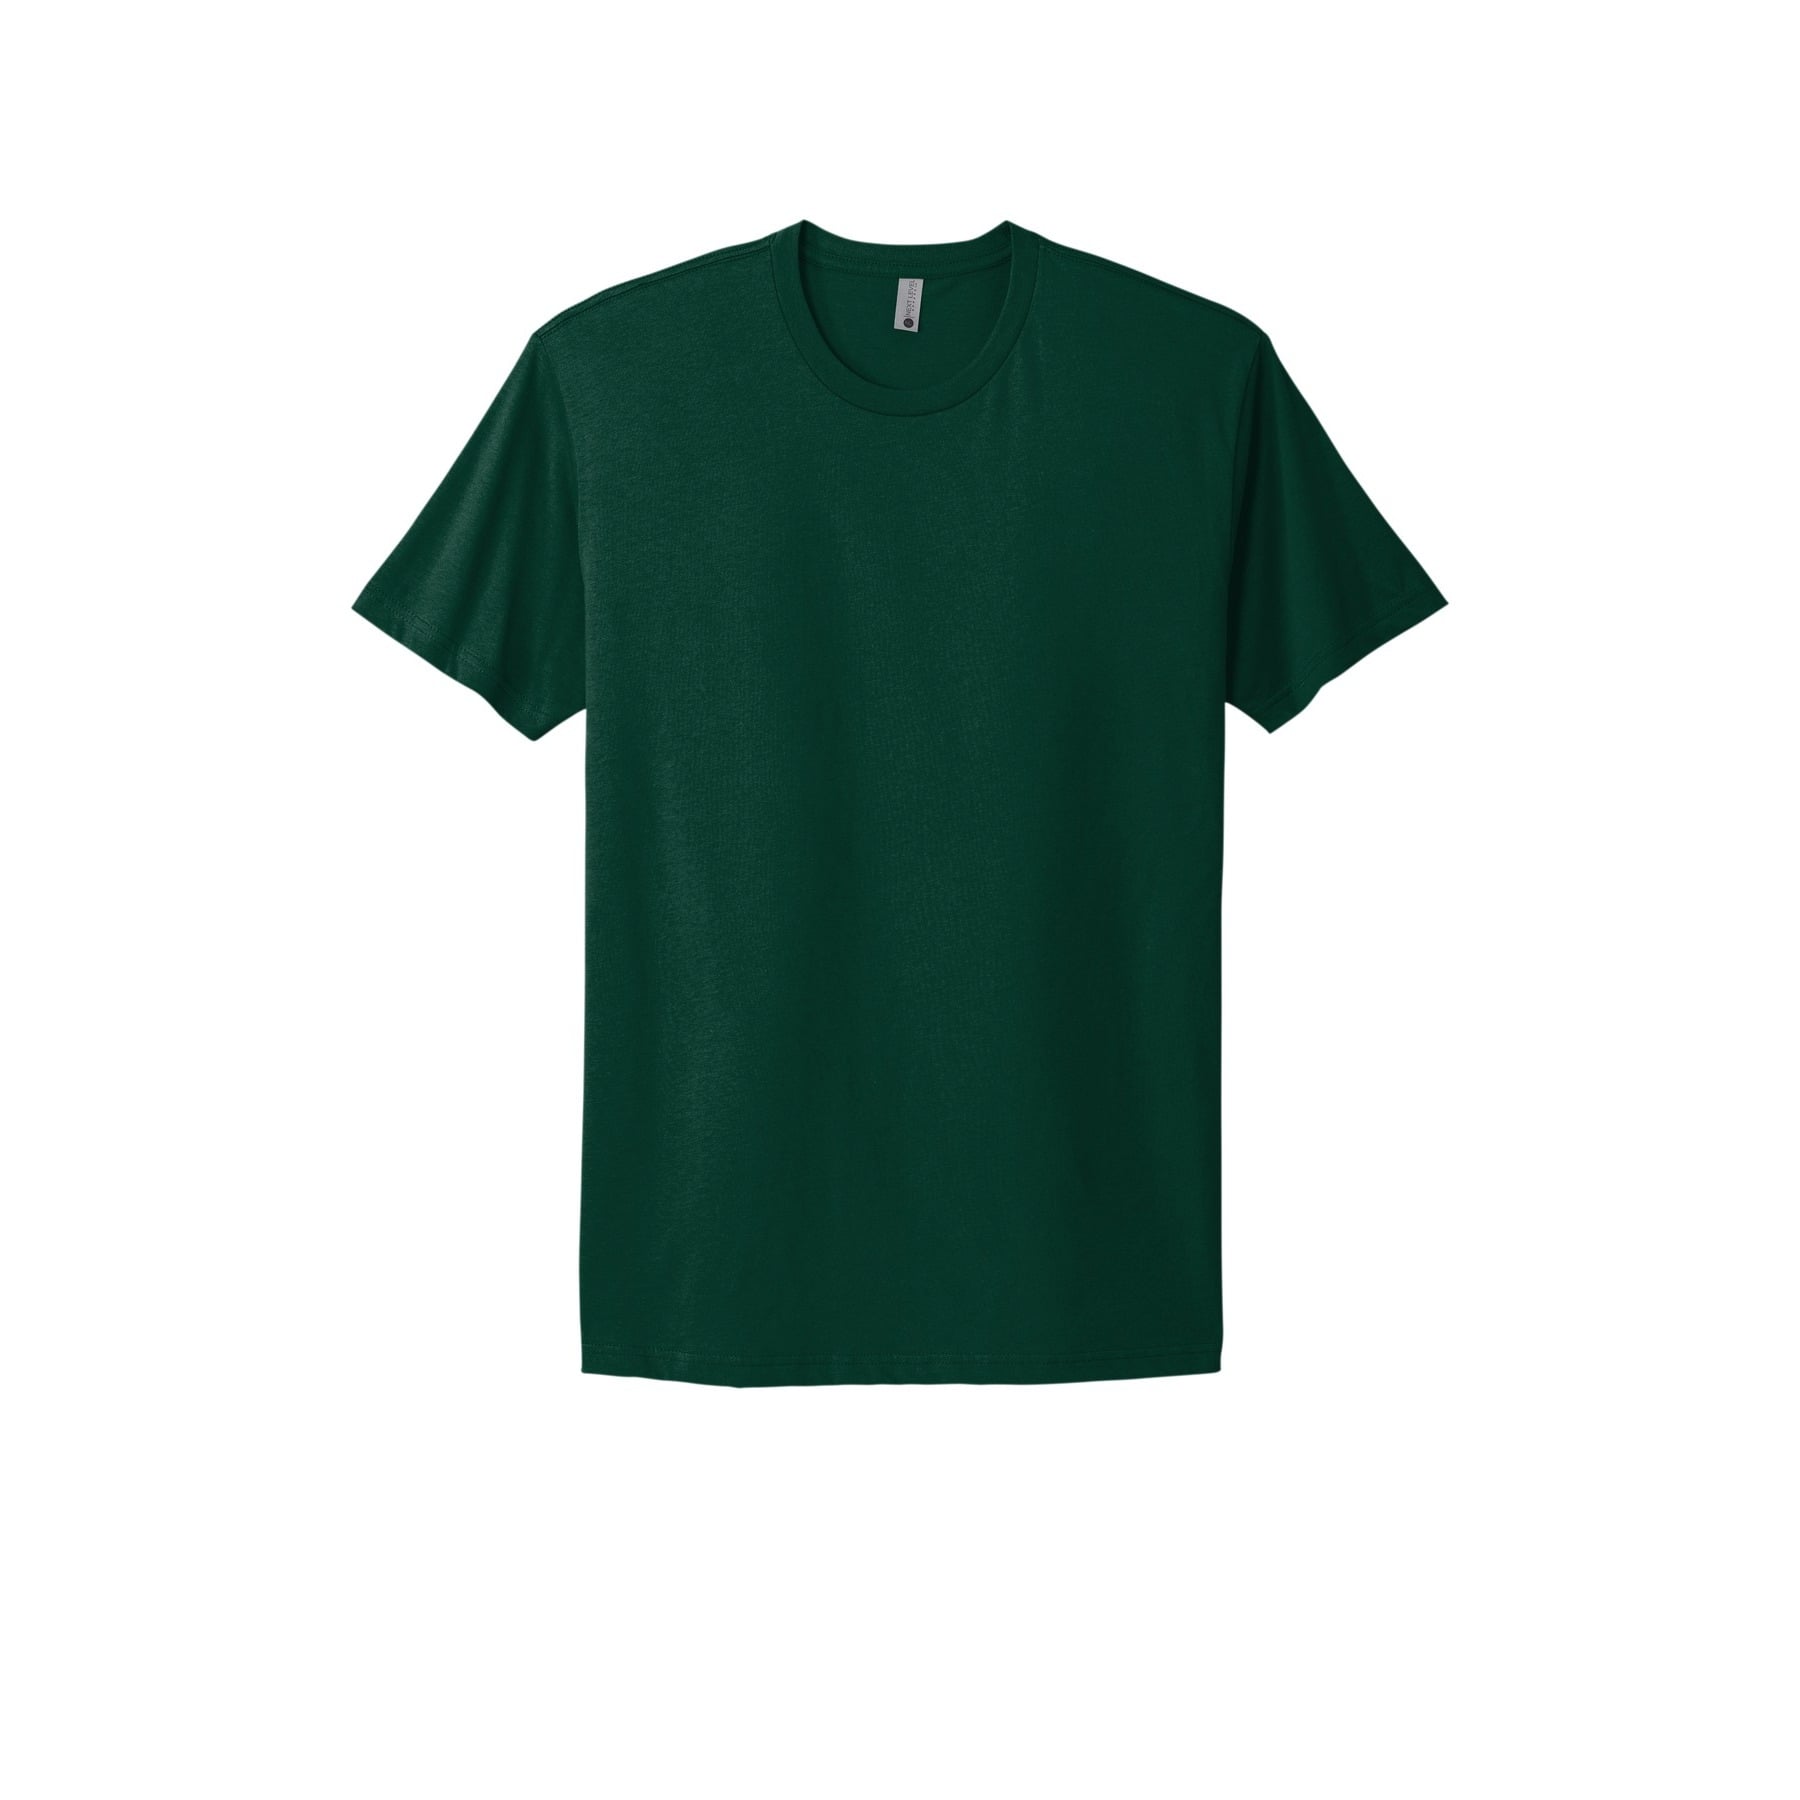 Next Level Unisex Adult Cotton T-Shirt